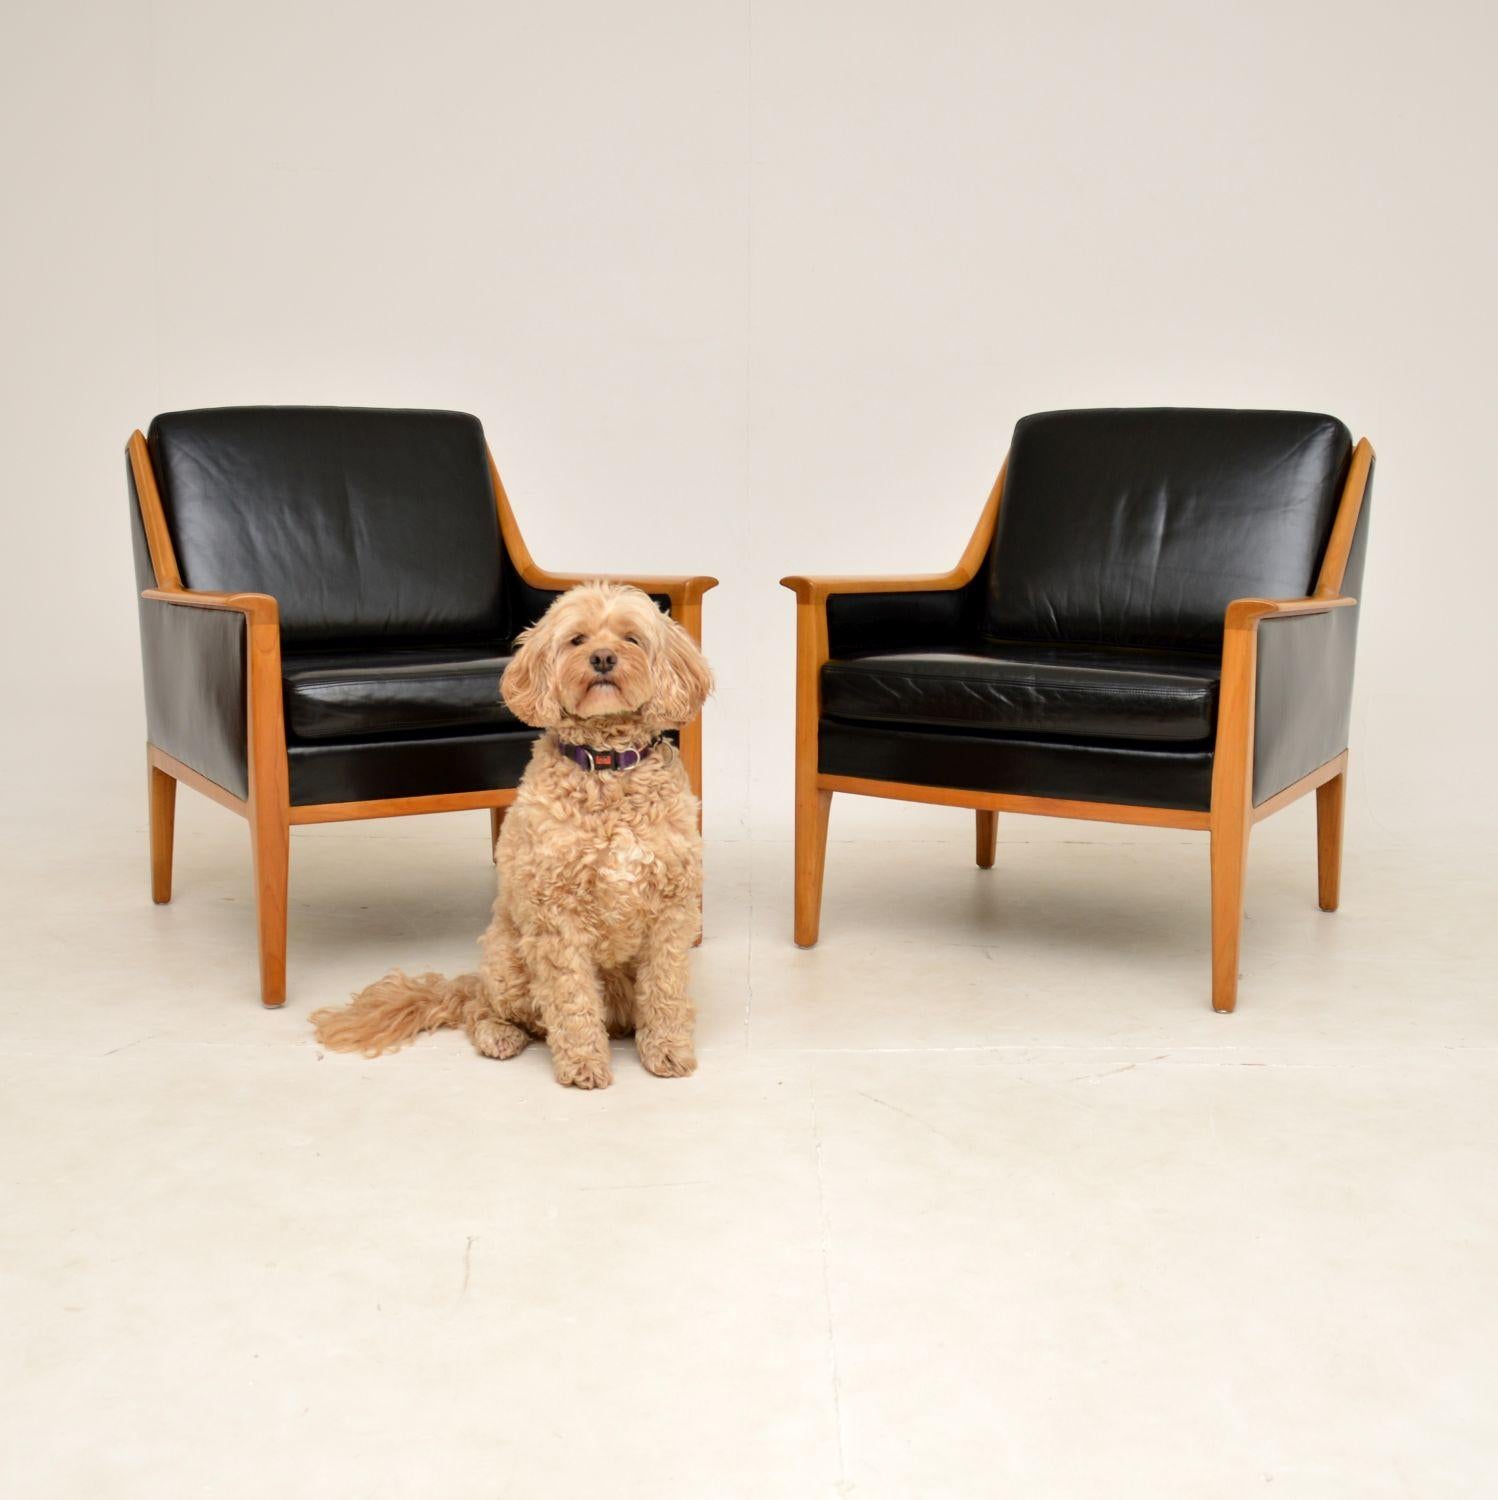 Ein wunderschönes Paar schwedischer Vintage-Sessel aus schwarzem Leder und Kirschholz. Sie wurden vor kurzem aus Schweden importiert, sie stammen aus den 1960er Jahren.

Die Qualität ist hervorragend, die Rahmen aus massivem Kirschholz haben ein